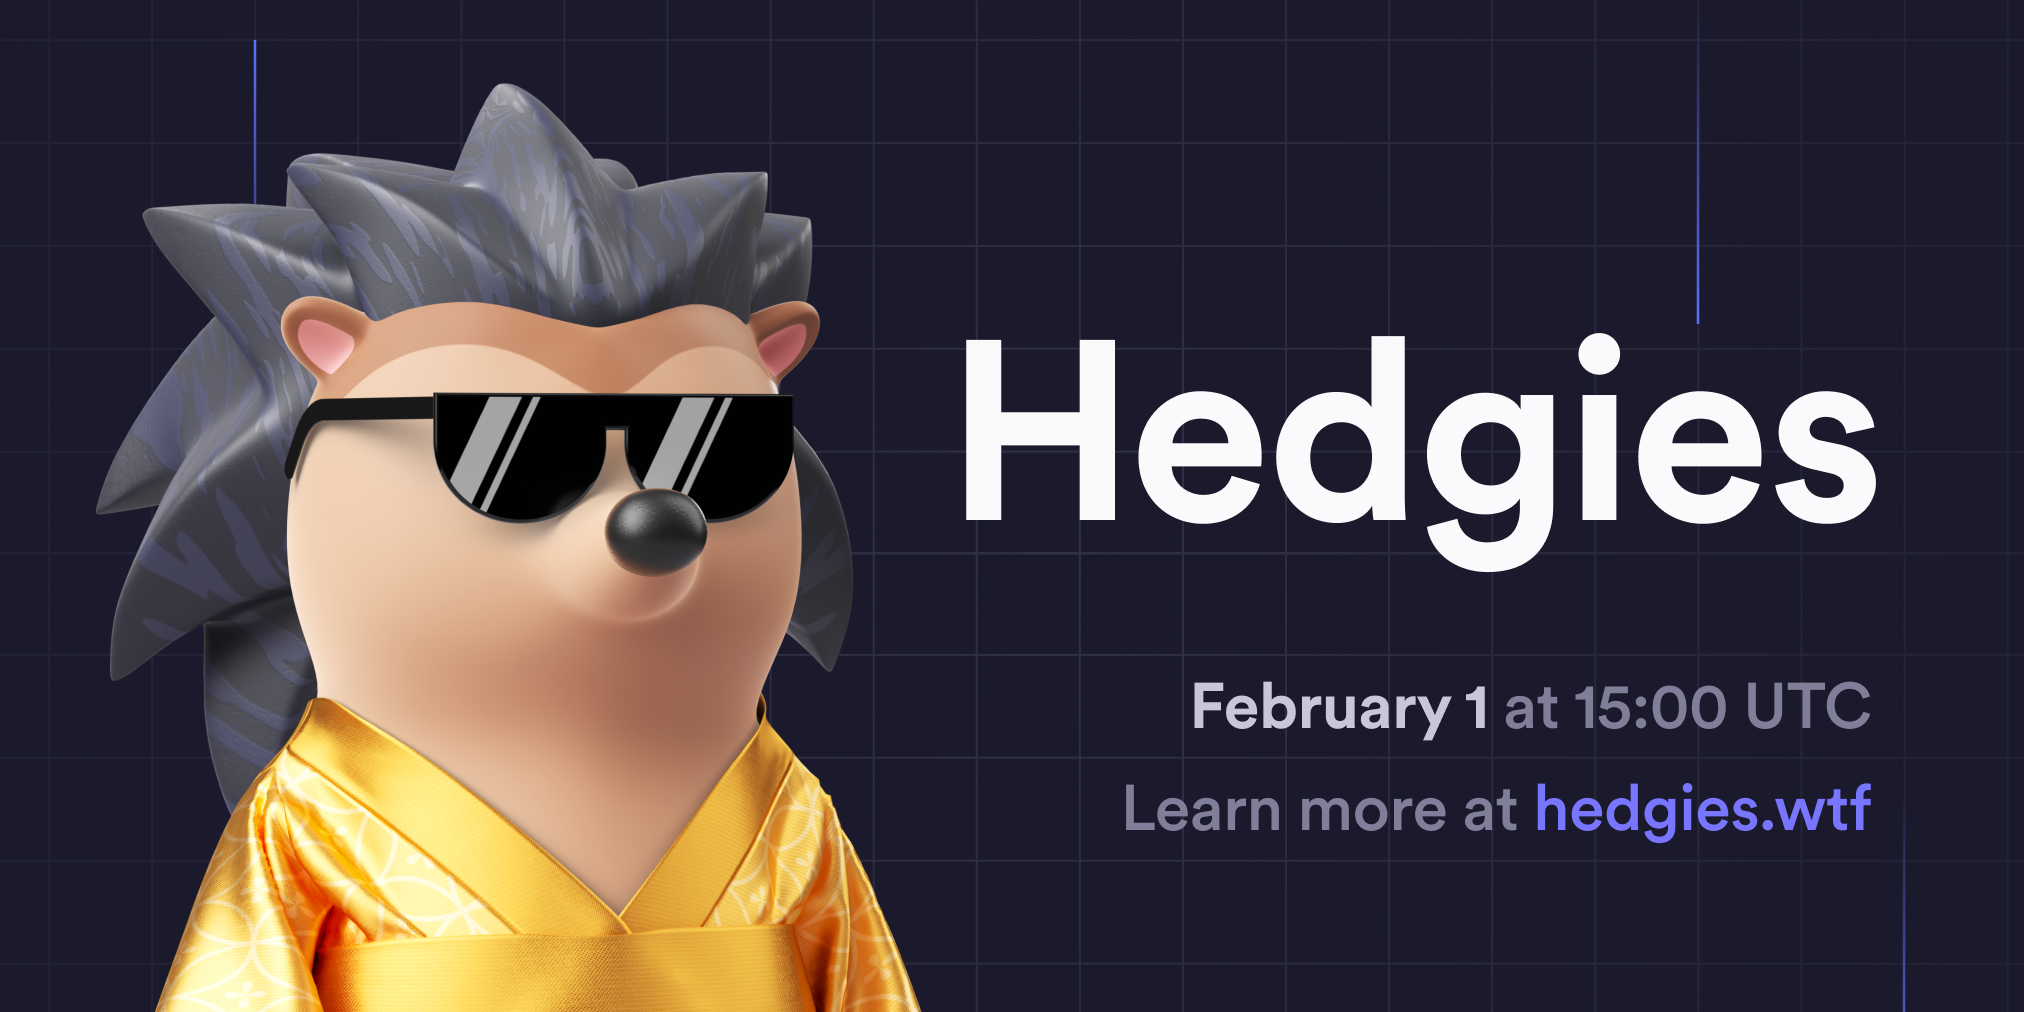 Introducing Hedgies